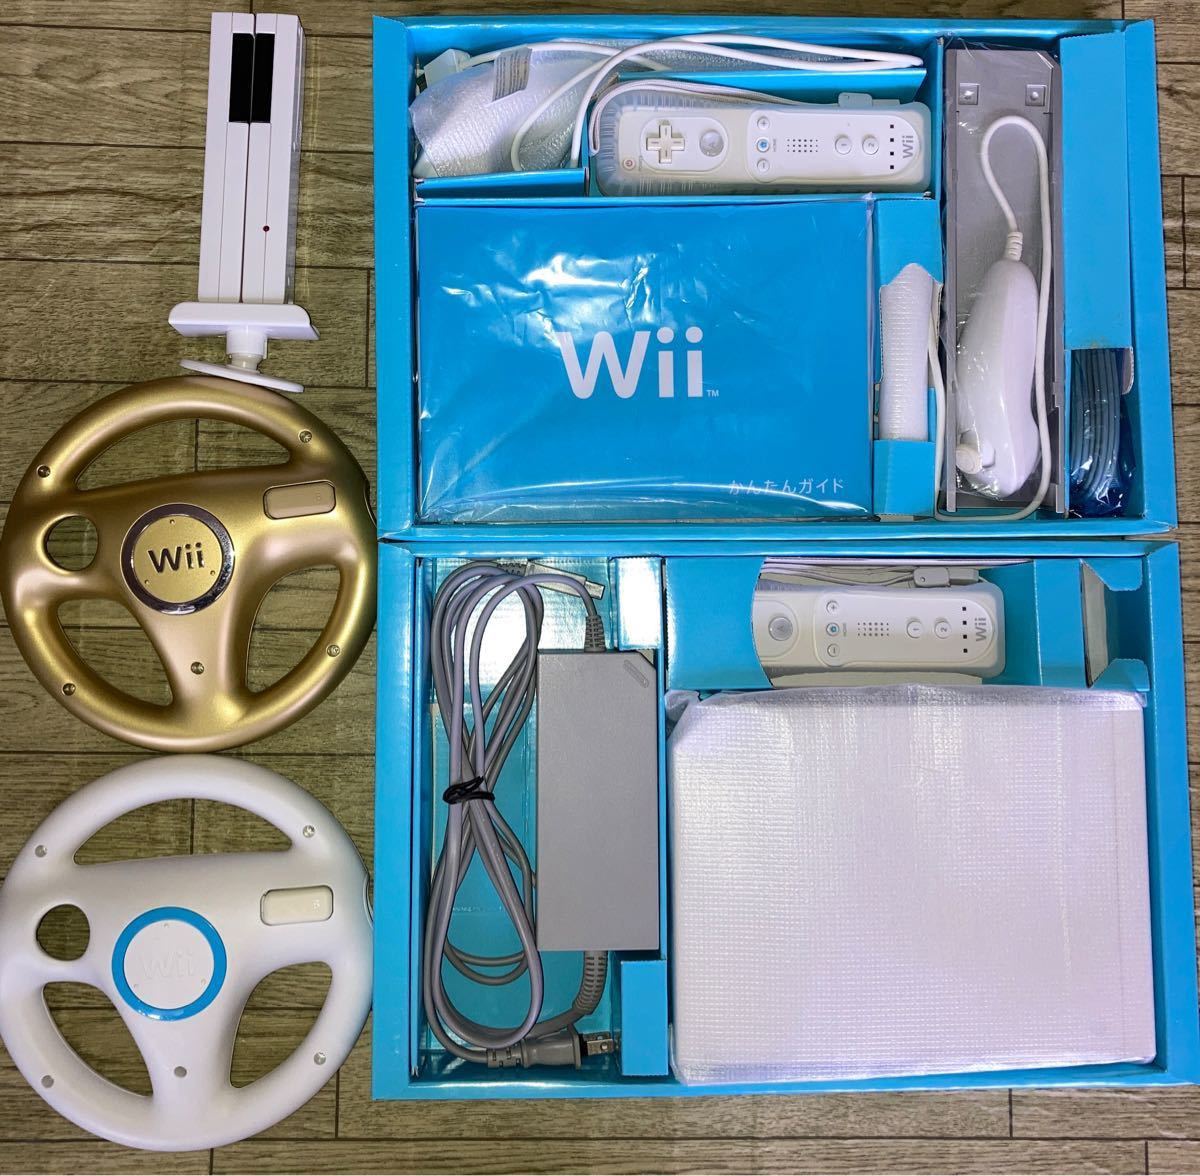 任天堂Wii本体一式(センサーバーは代替品)、ソフト(Wii sports,マリオカート,マリオパーティ8,ほか) 